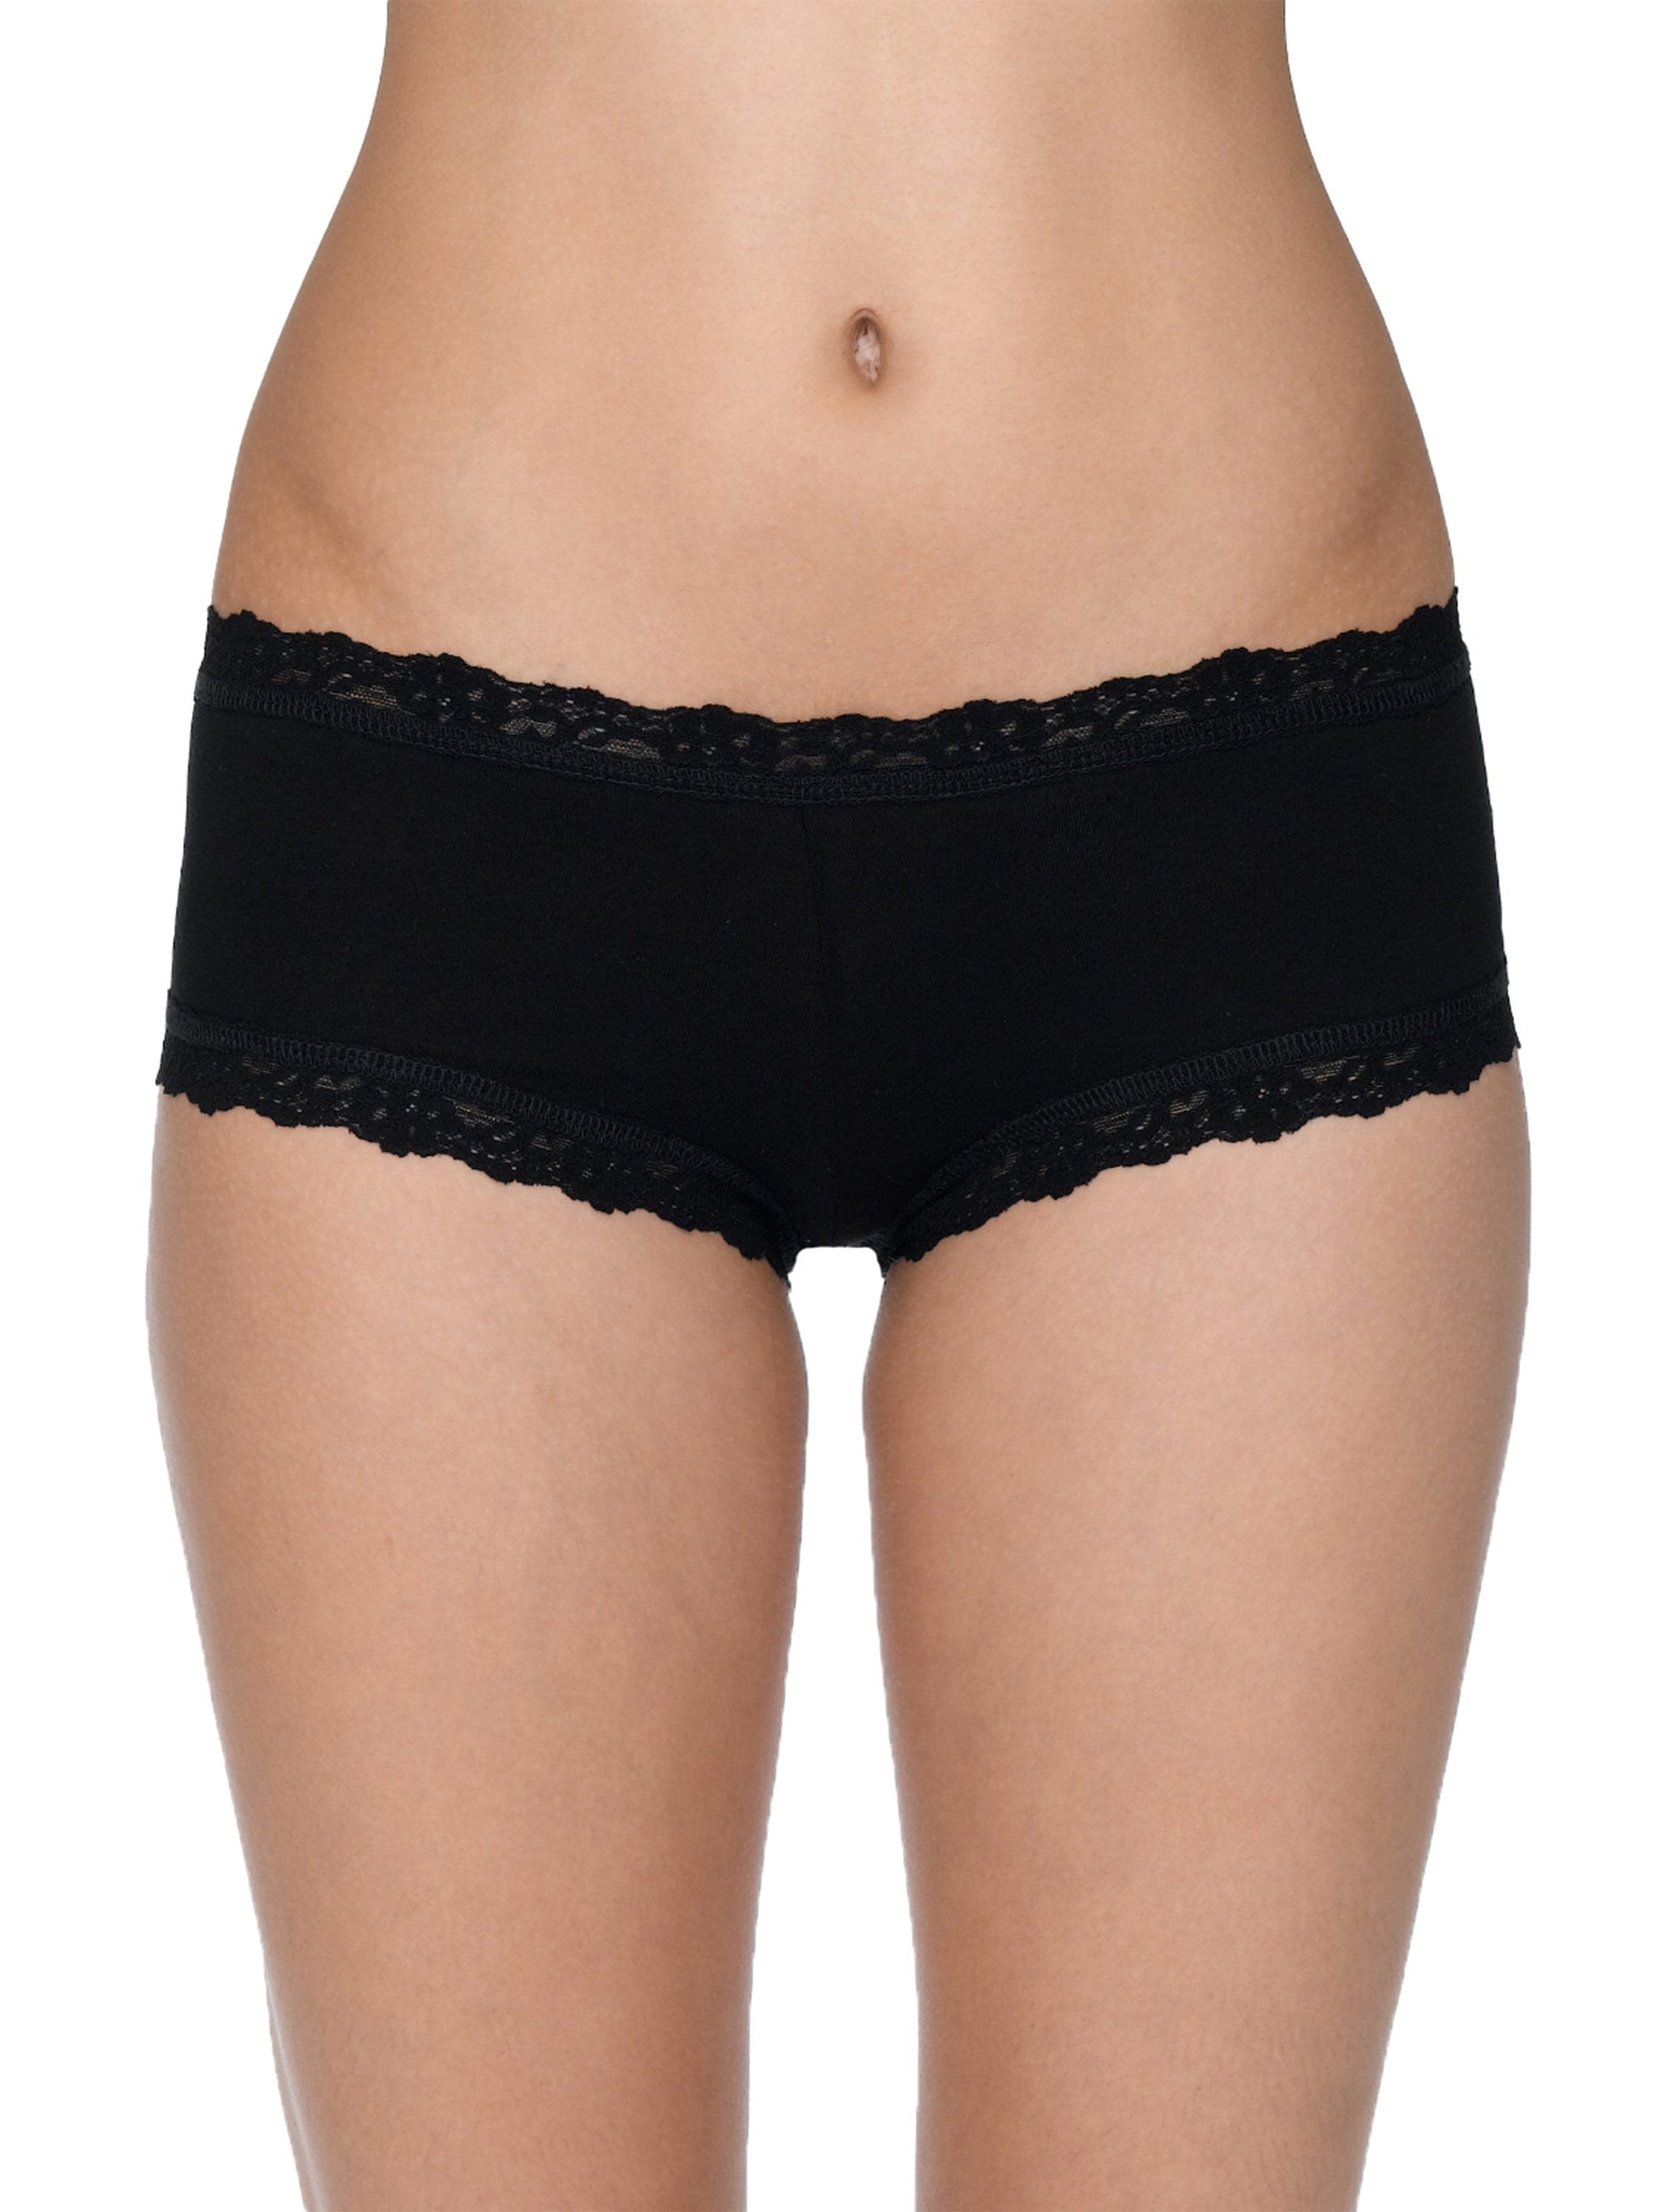 Milk - Set Of (2) Hot Short Underwear - For Women @ Best Price Online